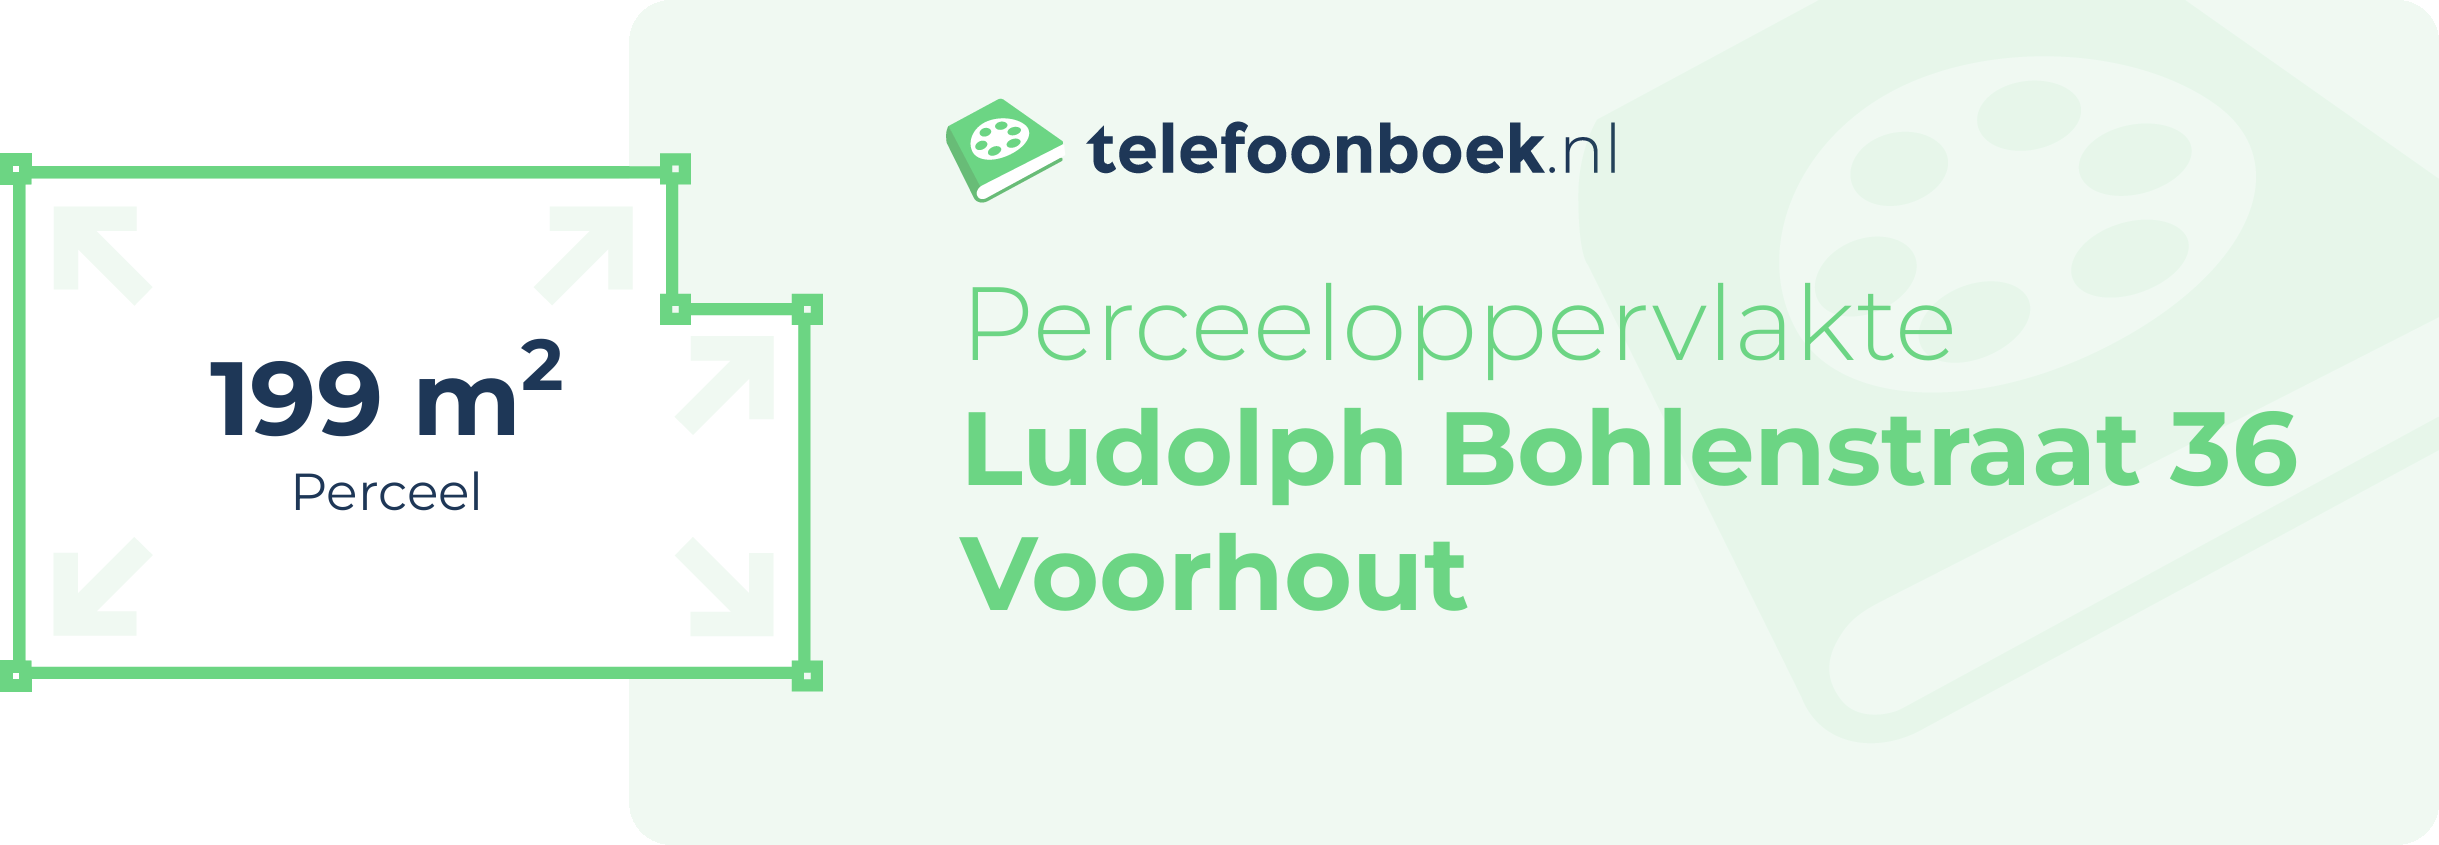 Perceeloppervlakte Ludolph Bohlenstraat 36 Voorhout